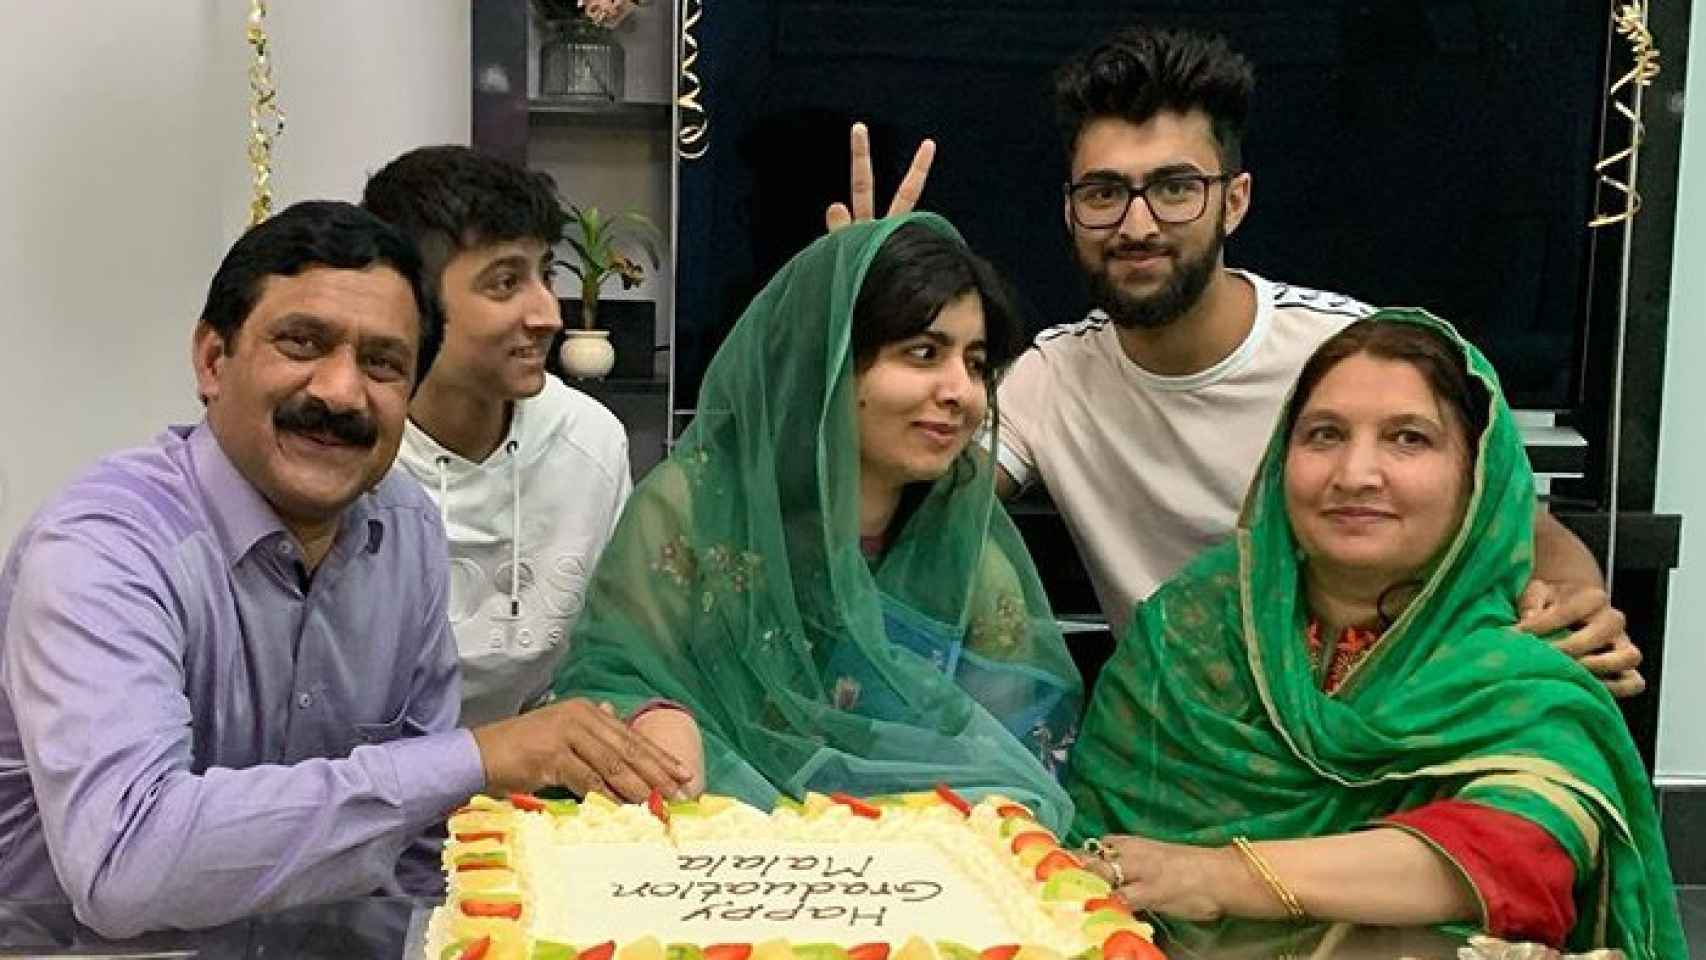 Malala celebrando la graduación junto a su familia.